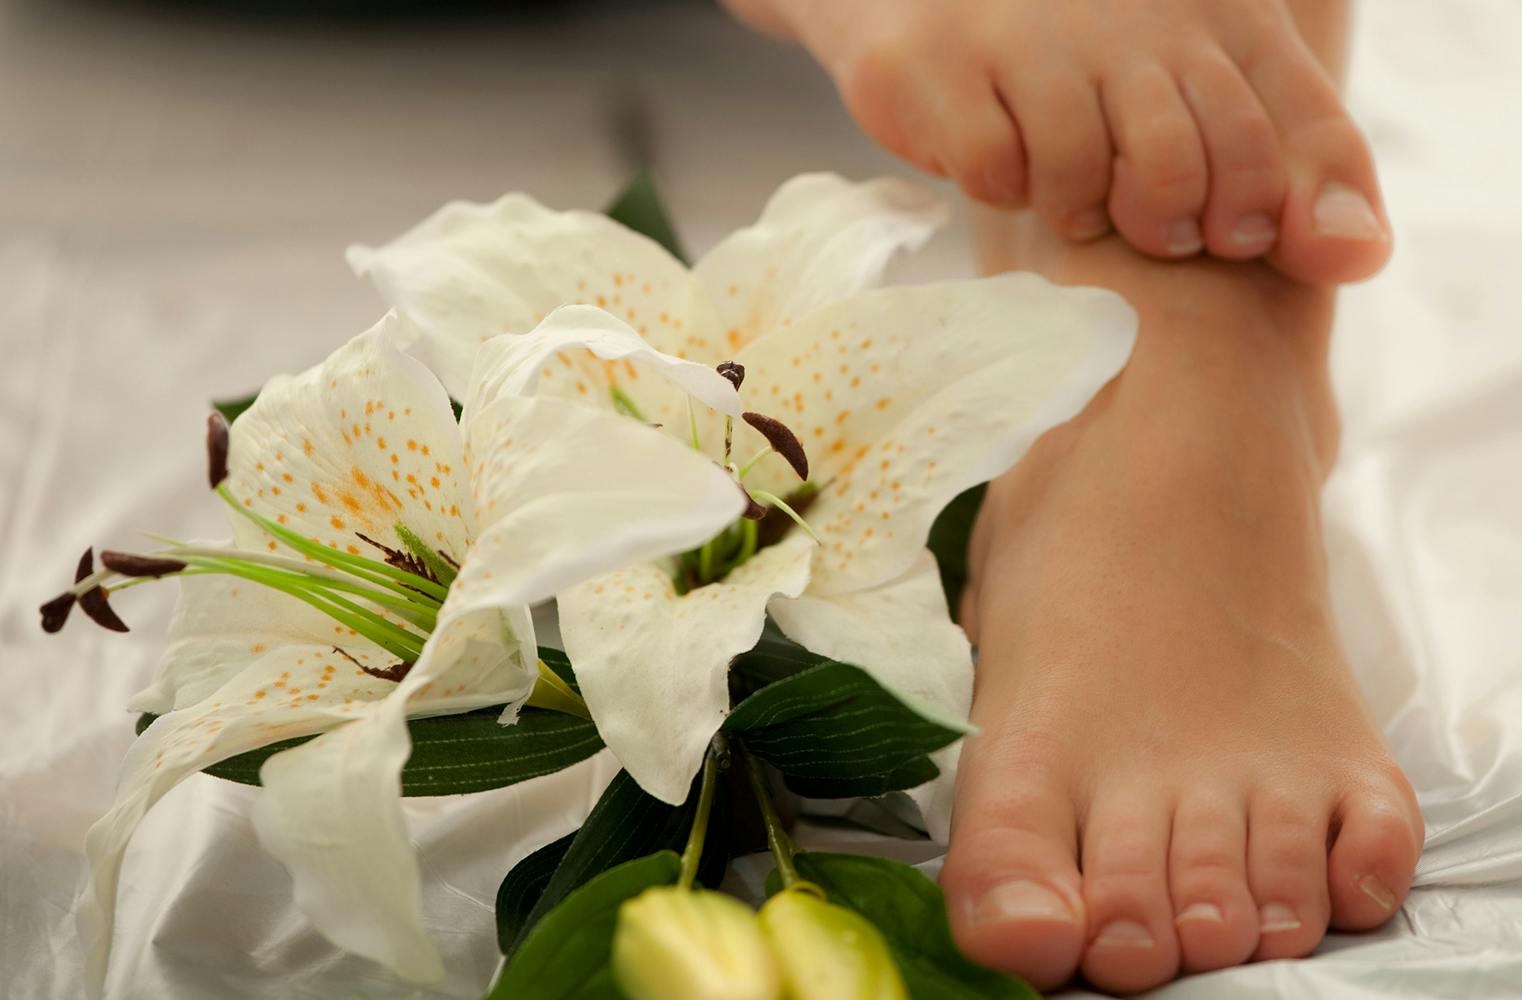 Asia Luxus Paket | Peeling, balinesische Massage u.v.m.